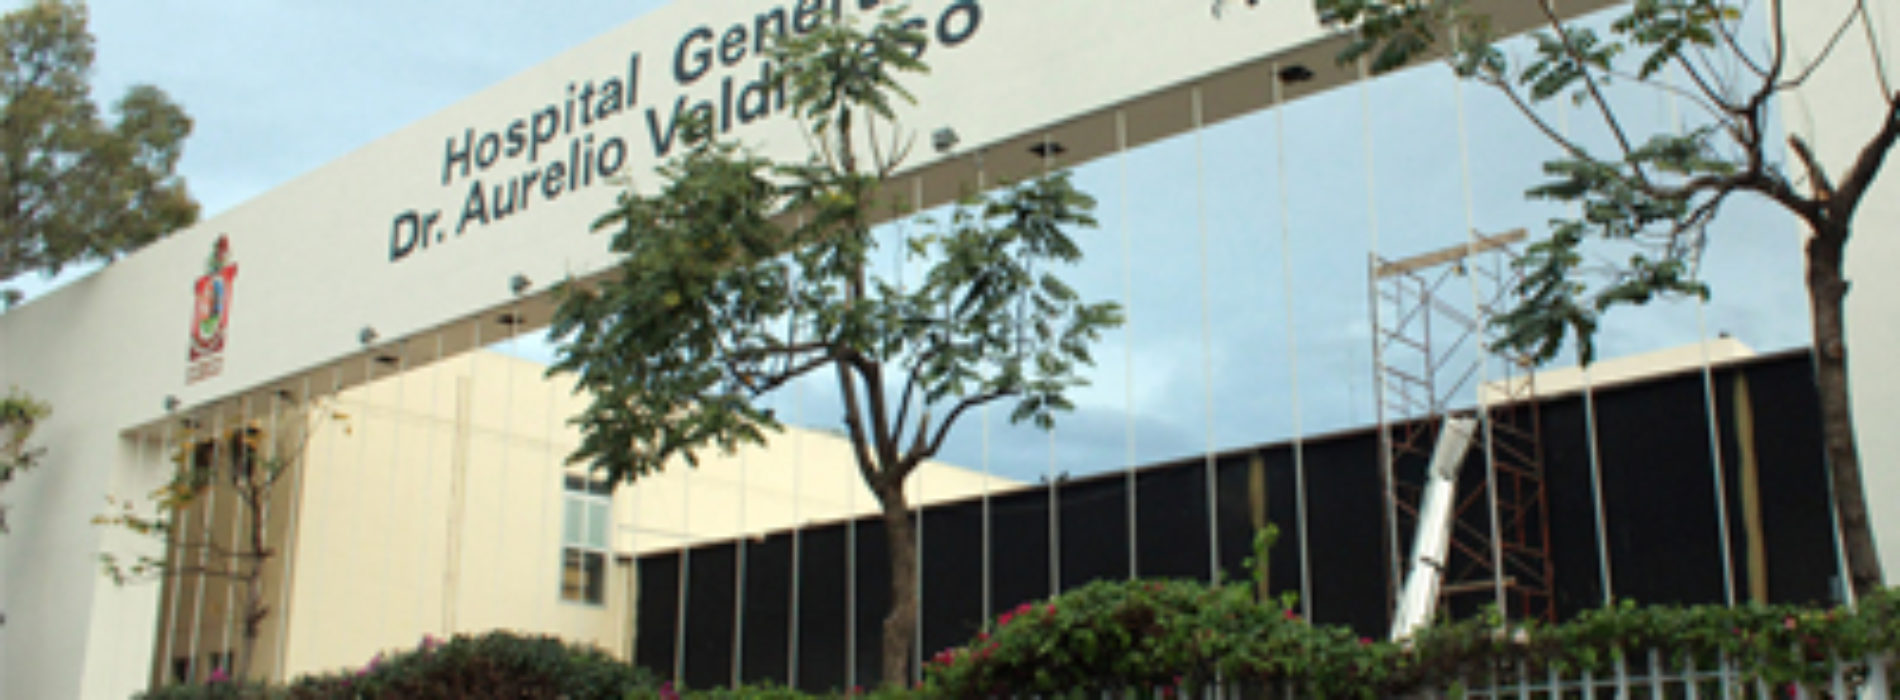 Hospital General “Dr. Aurelio Valdivieso”, medio siglo garantizando el derecho a la salud de los oaxaqueños